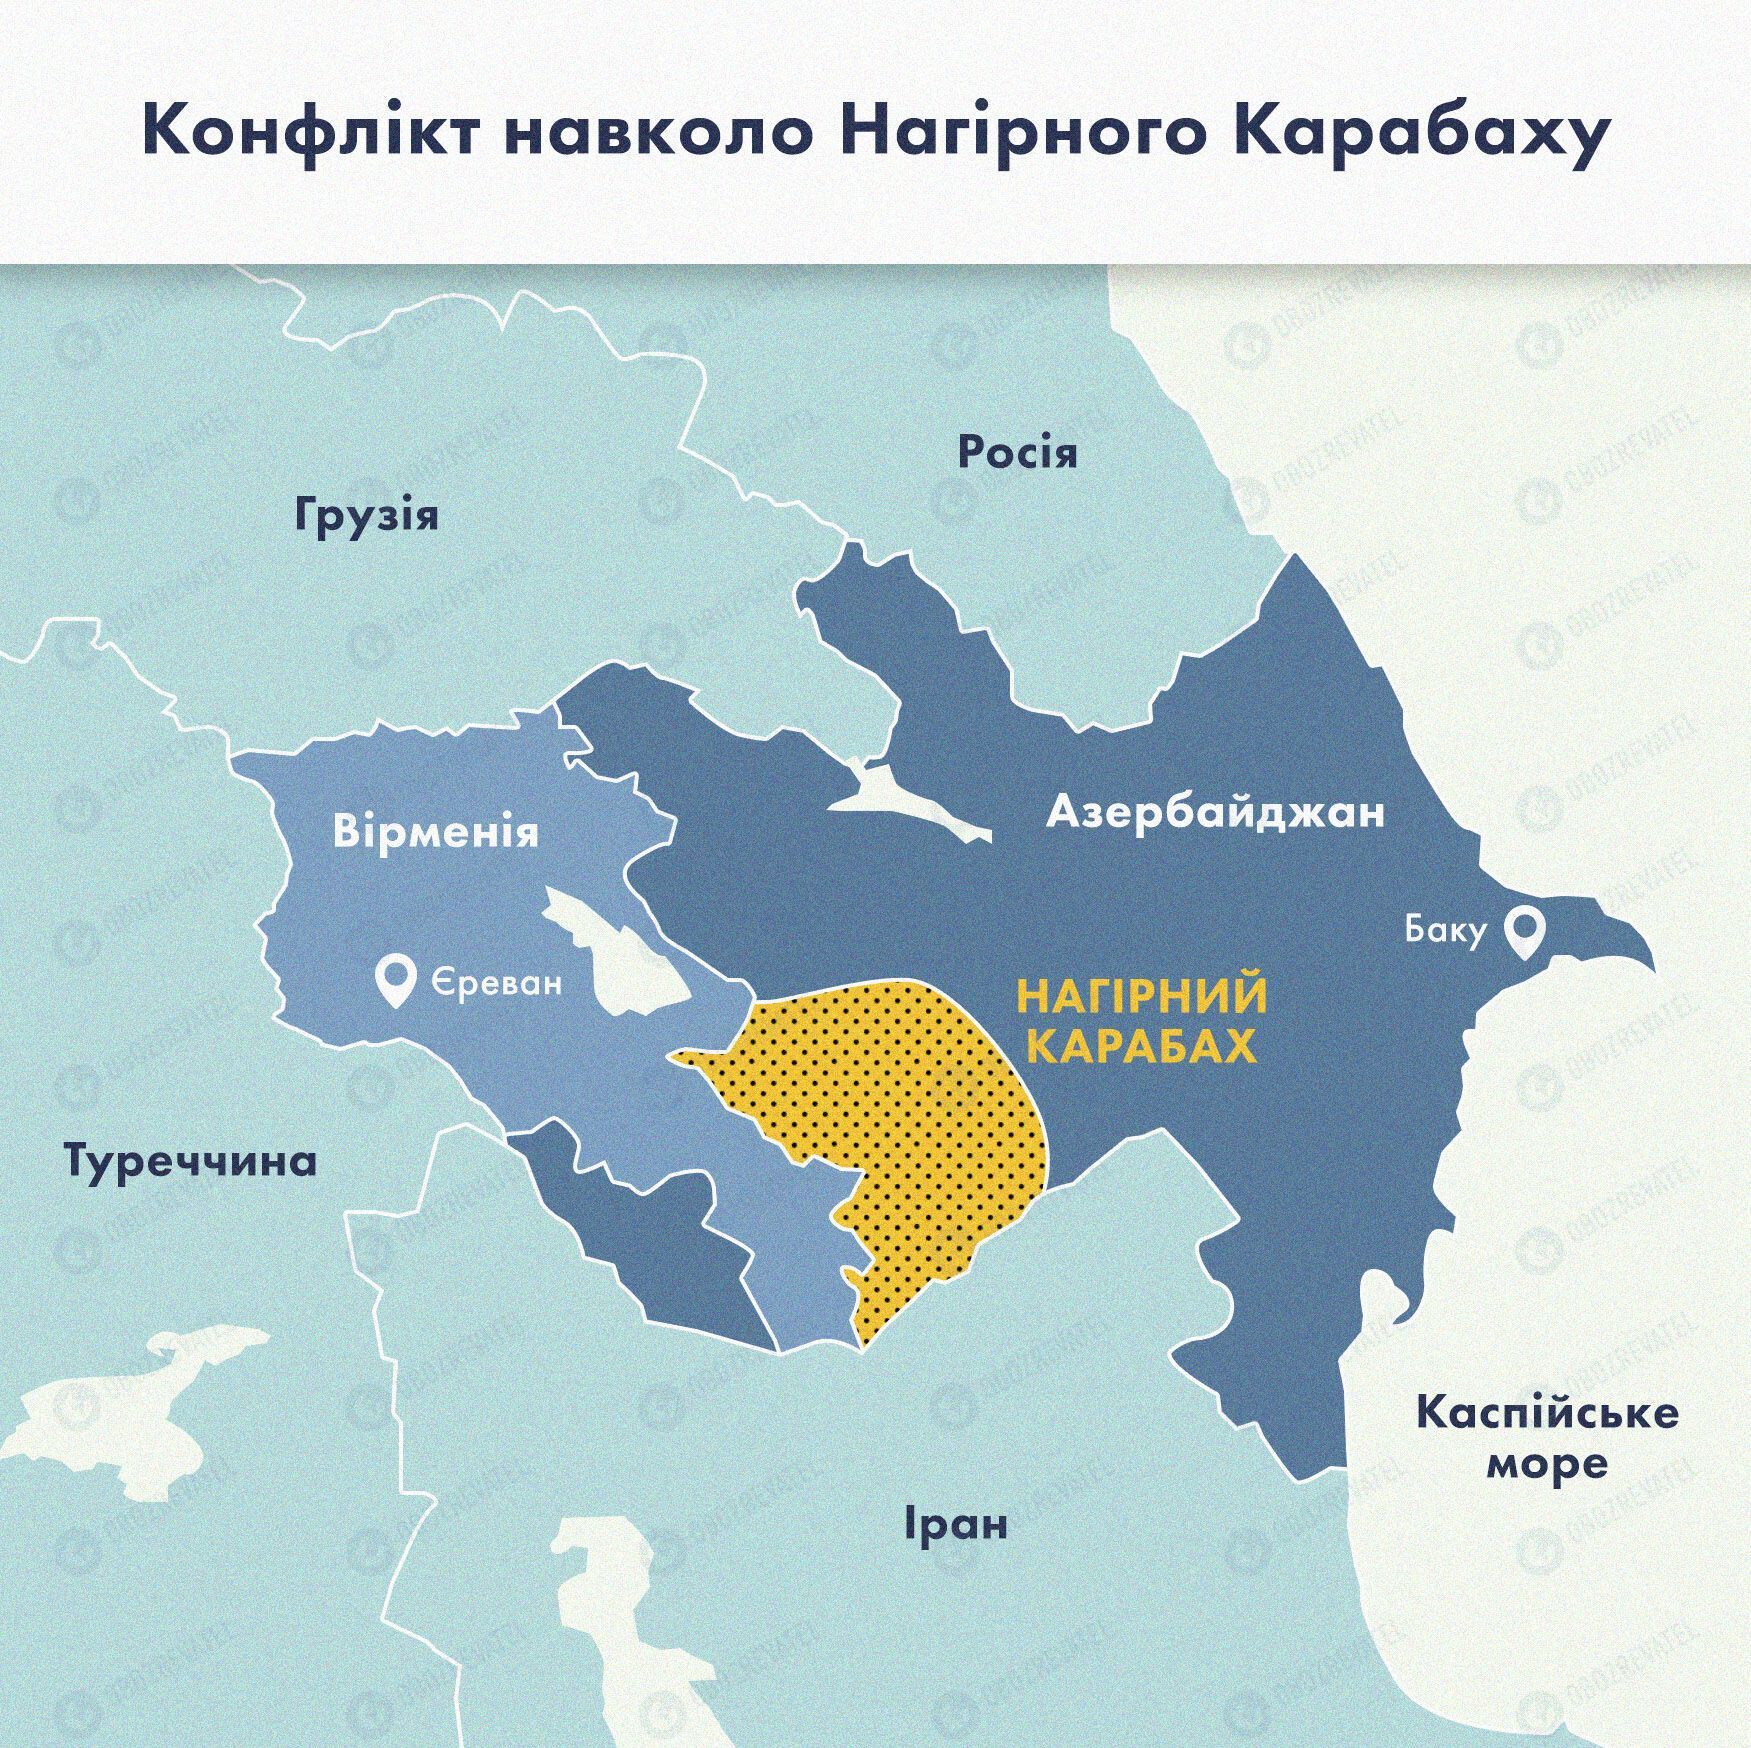 Карта относительно ситуации в Нагорном Карабахе